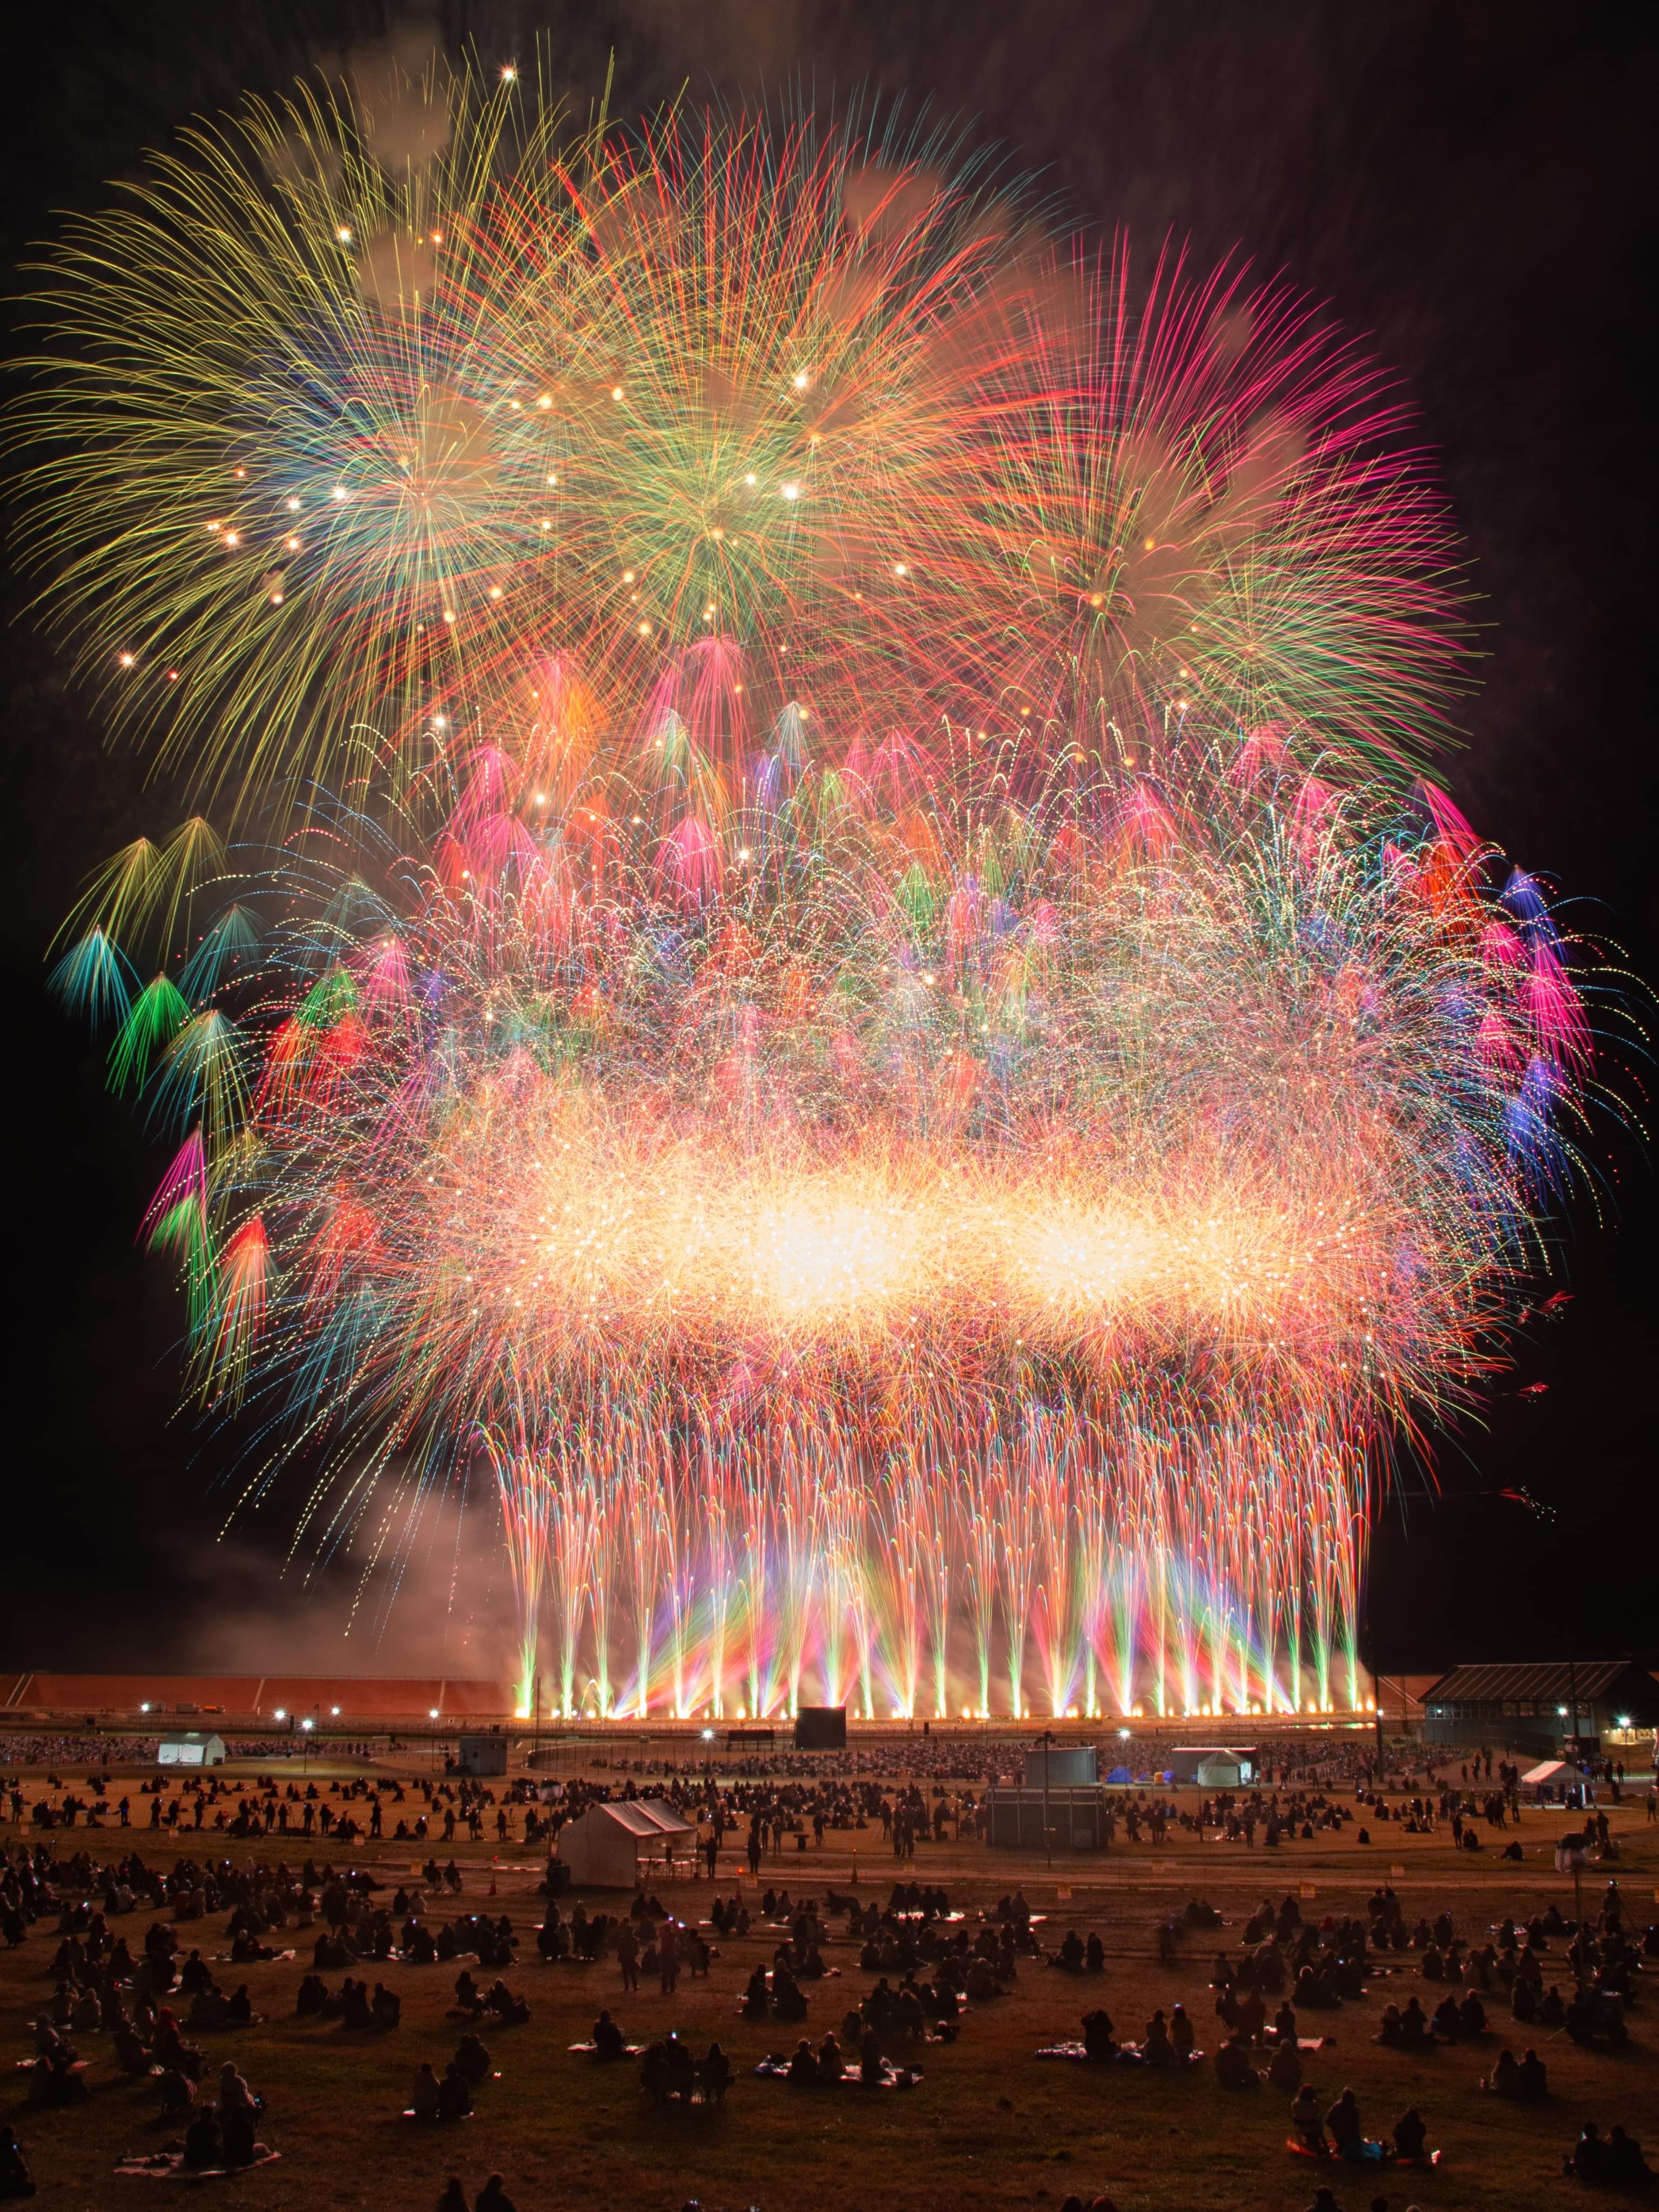 21年国内最大級の花火大会 三陸花火競技大会21 開催決定 東日本太平洋沿岸で 唯一 の花火競技大会 で三陸を活性化 Fireworks株式会社のプレスリリース